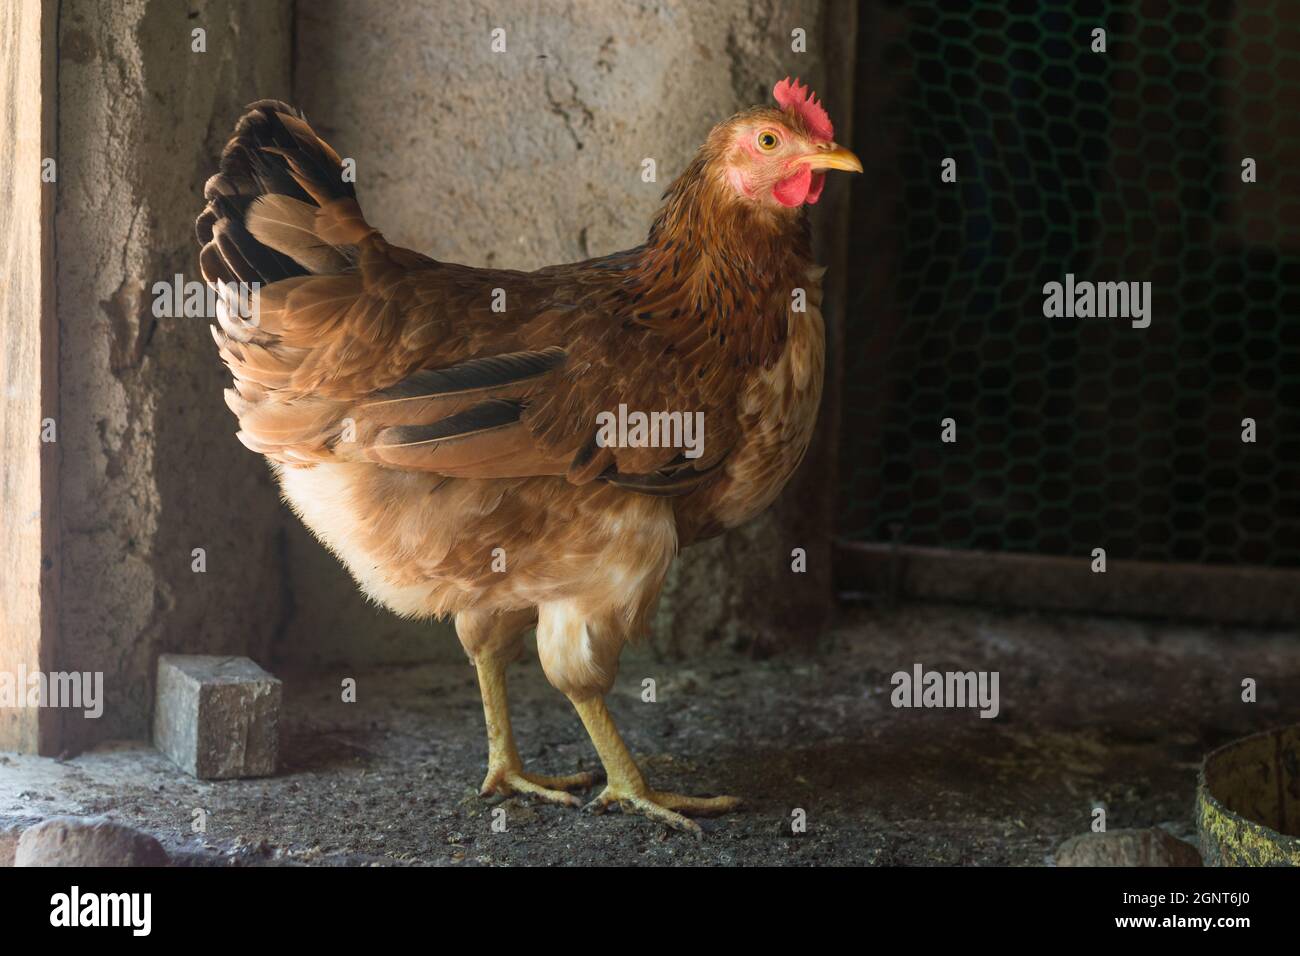 huevo poniendo pollo marrón, gallina doméstica en una gallina, tiro de primer plano tomado en luz natural Foto de stock